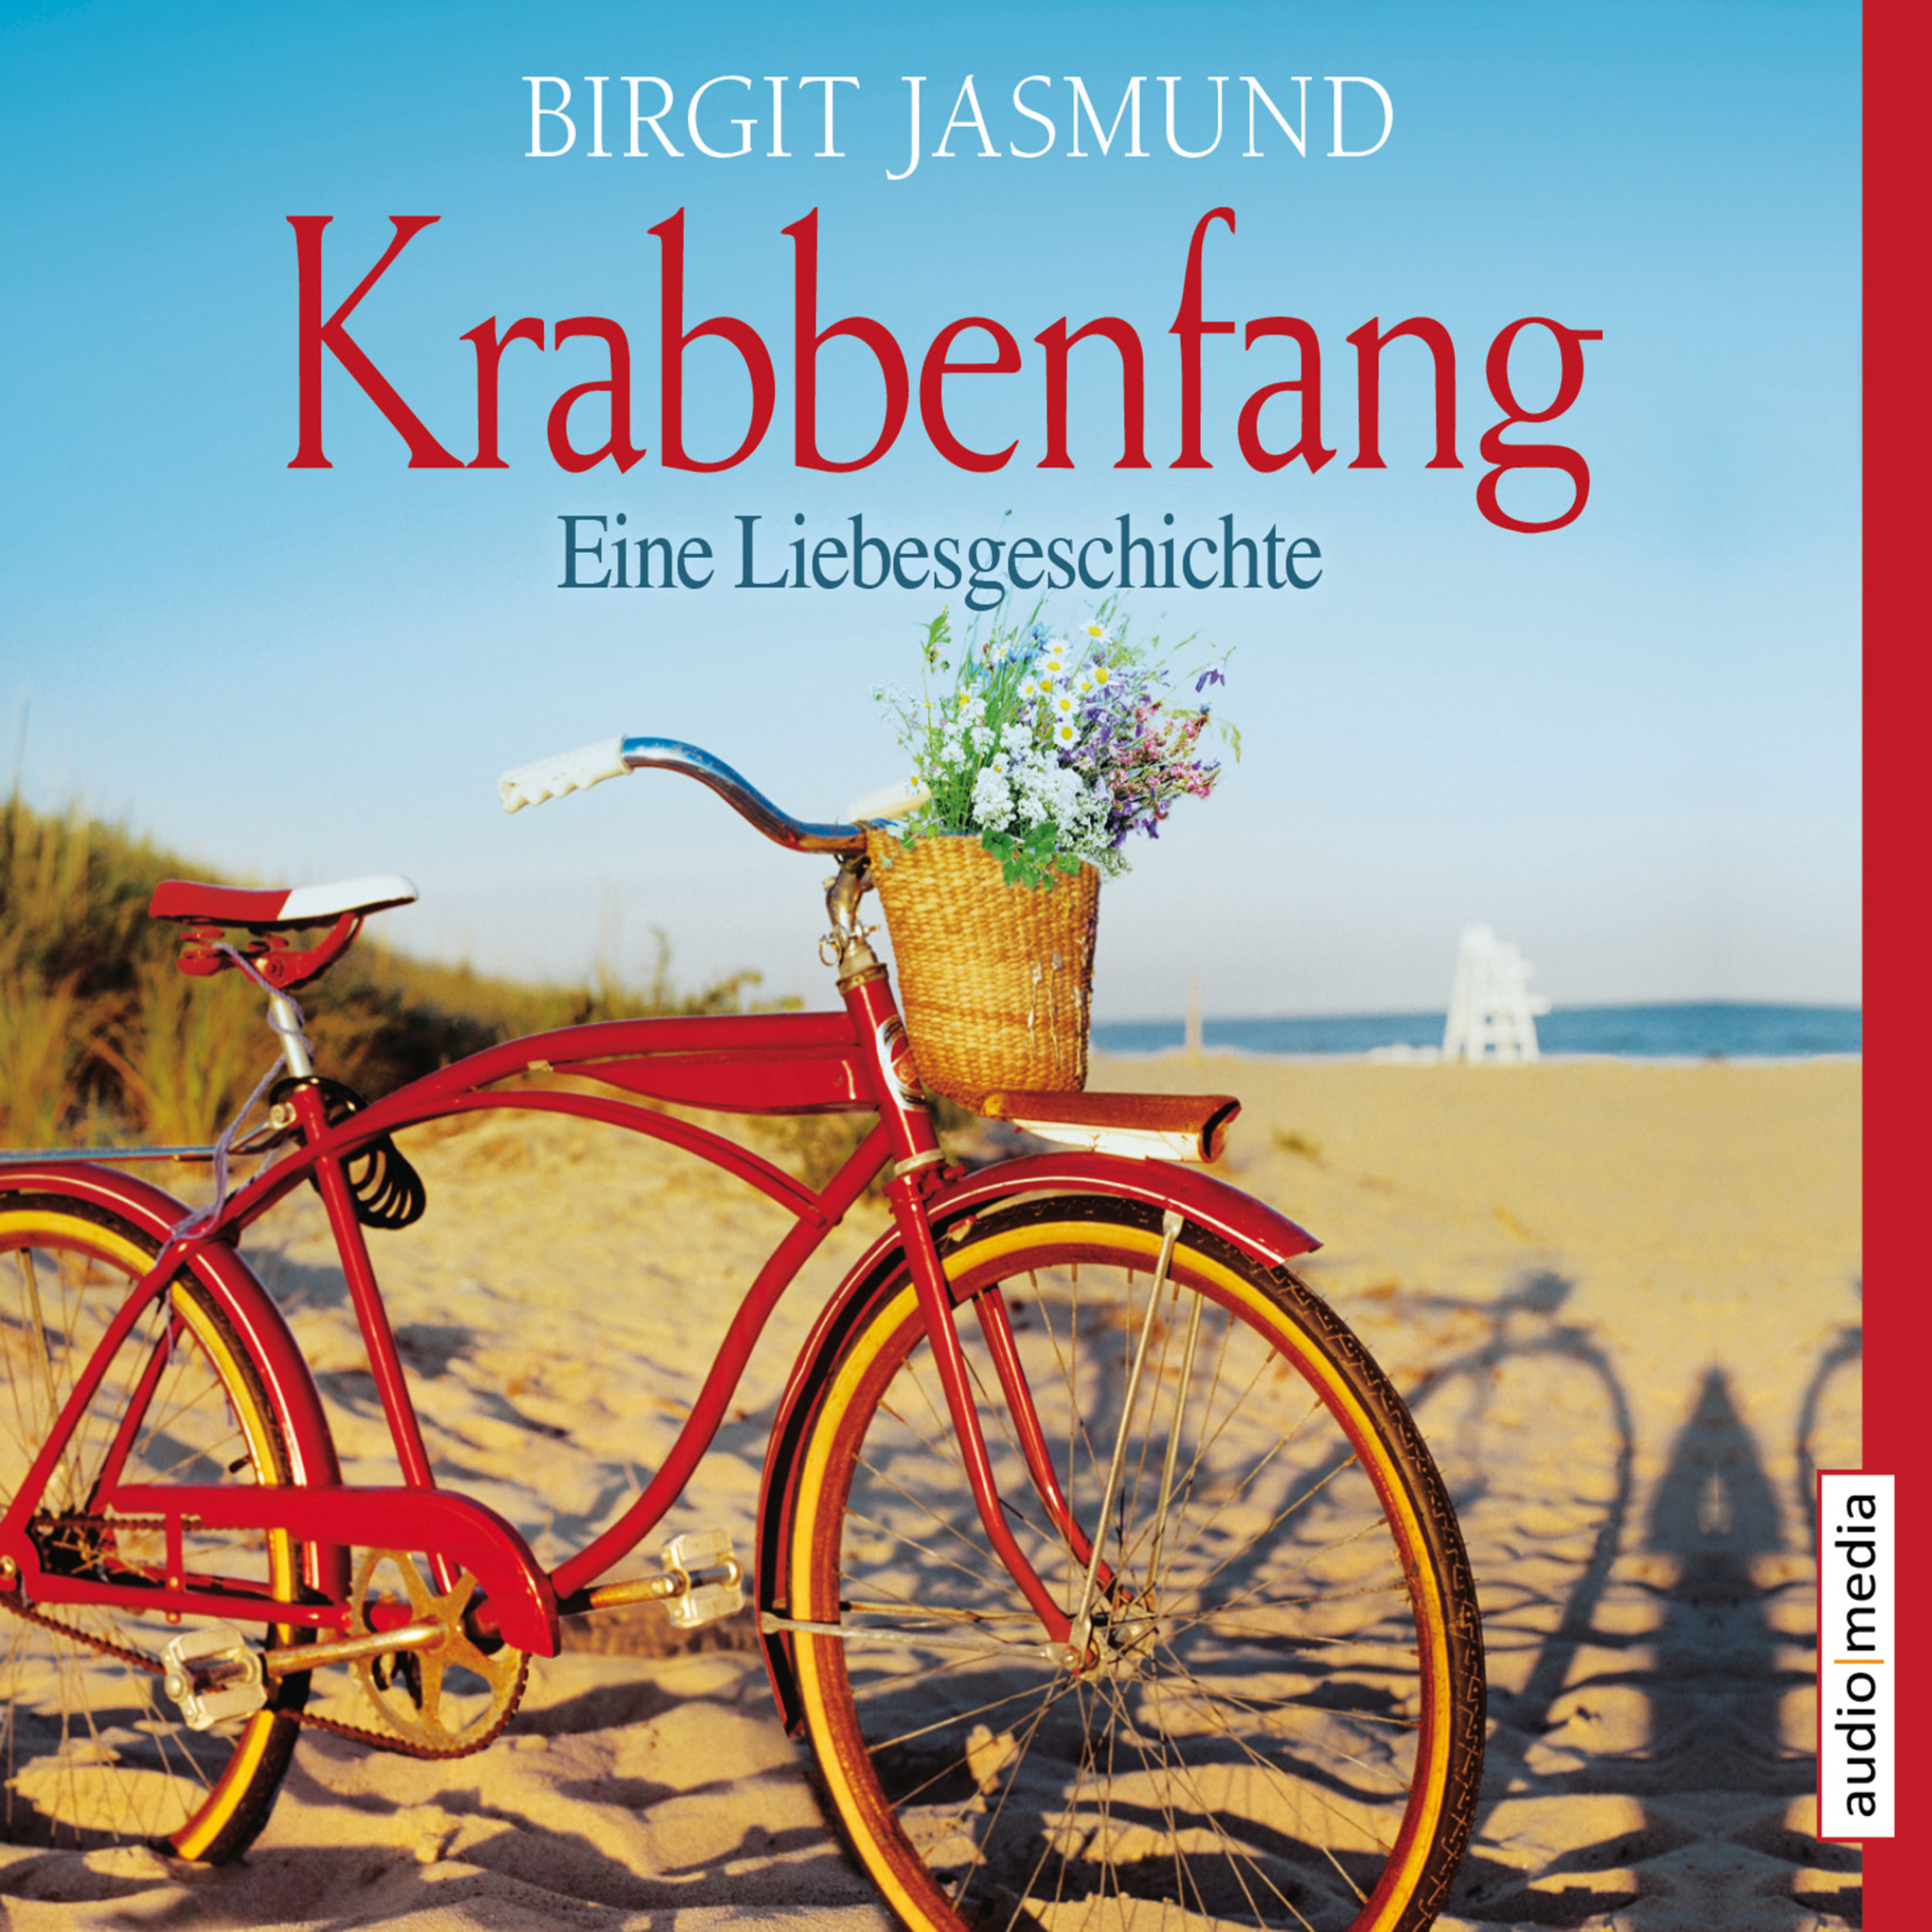 Krabbenfang Hörbuch sicher downloaden - jetzt bei Weltbild.de!